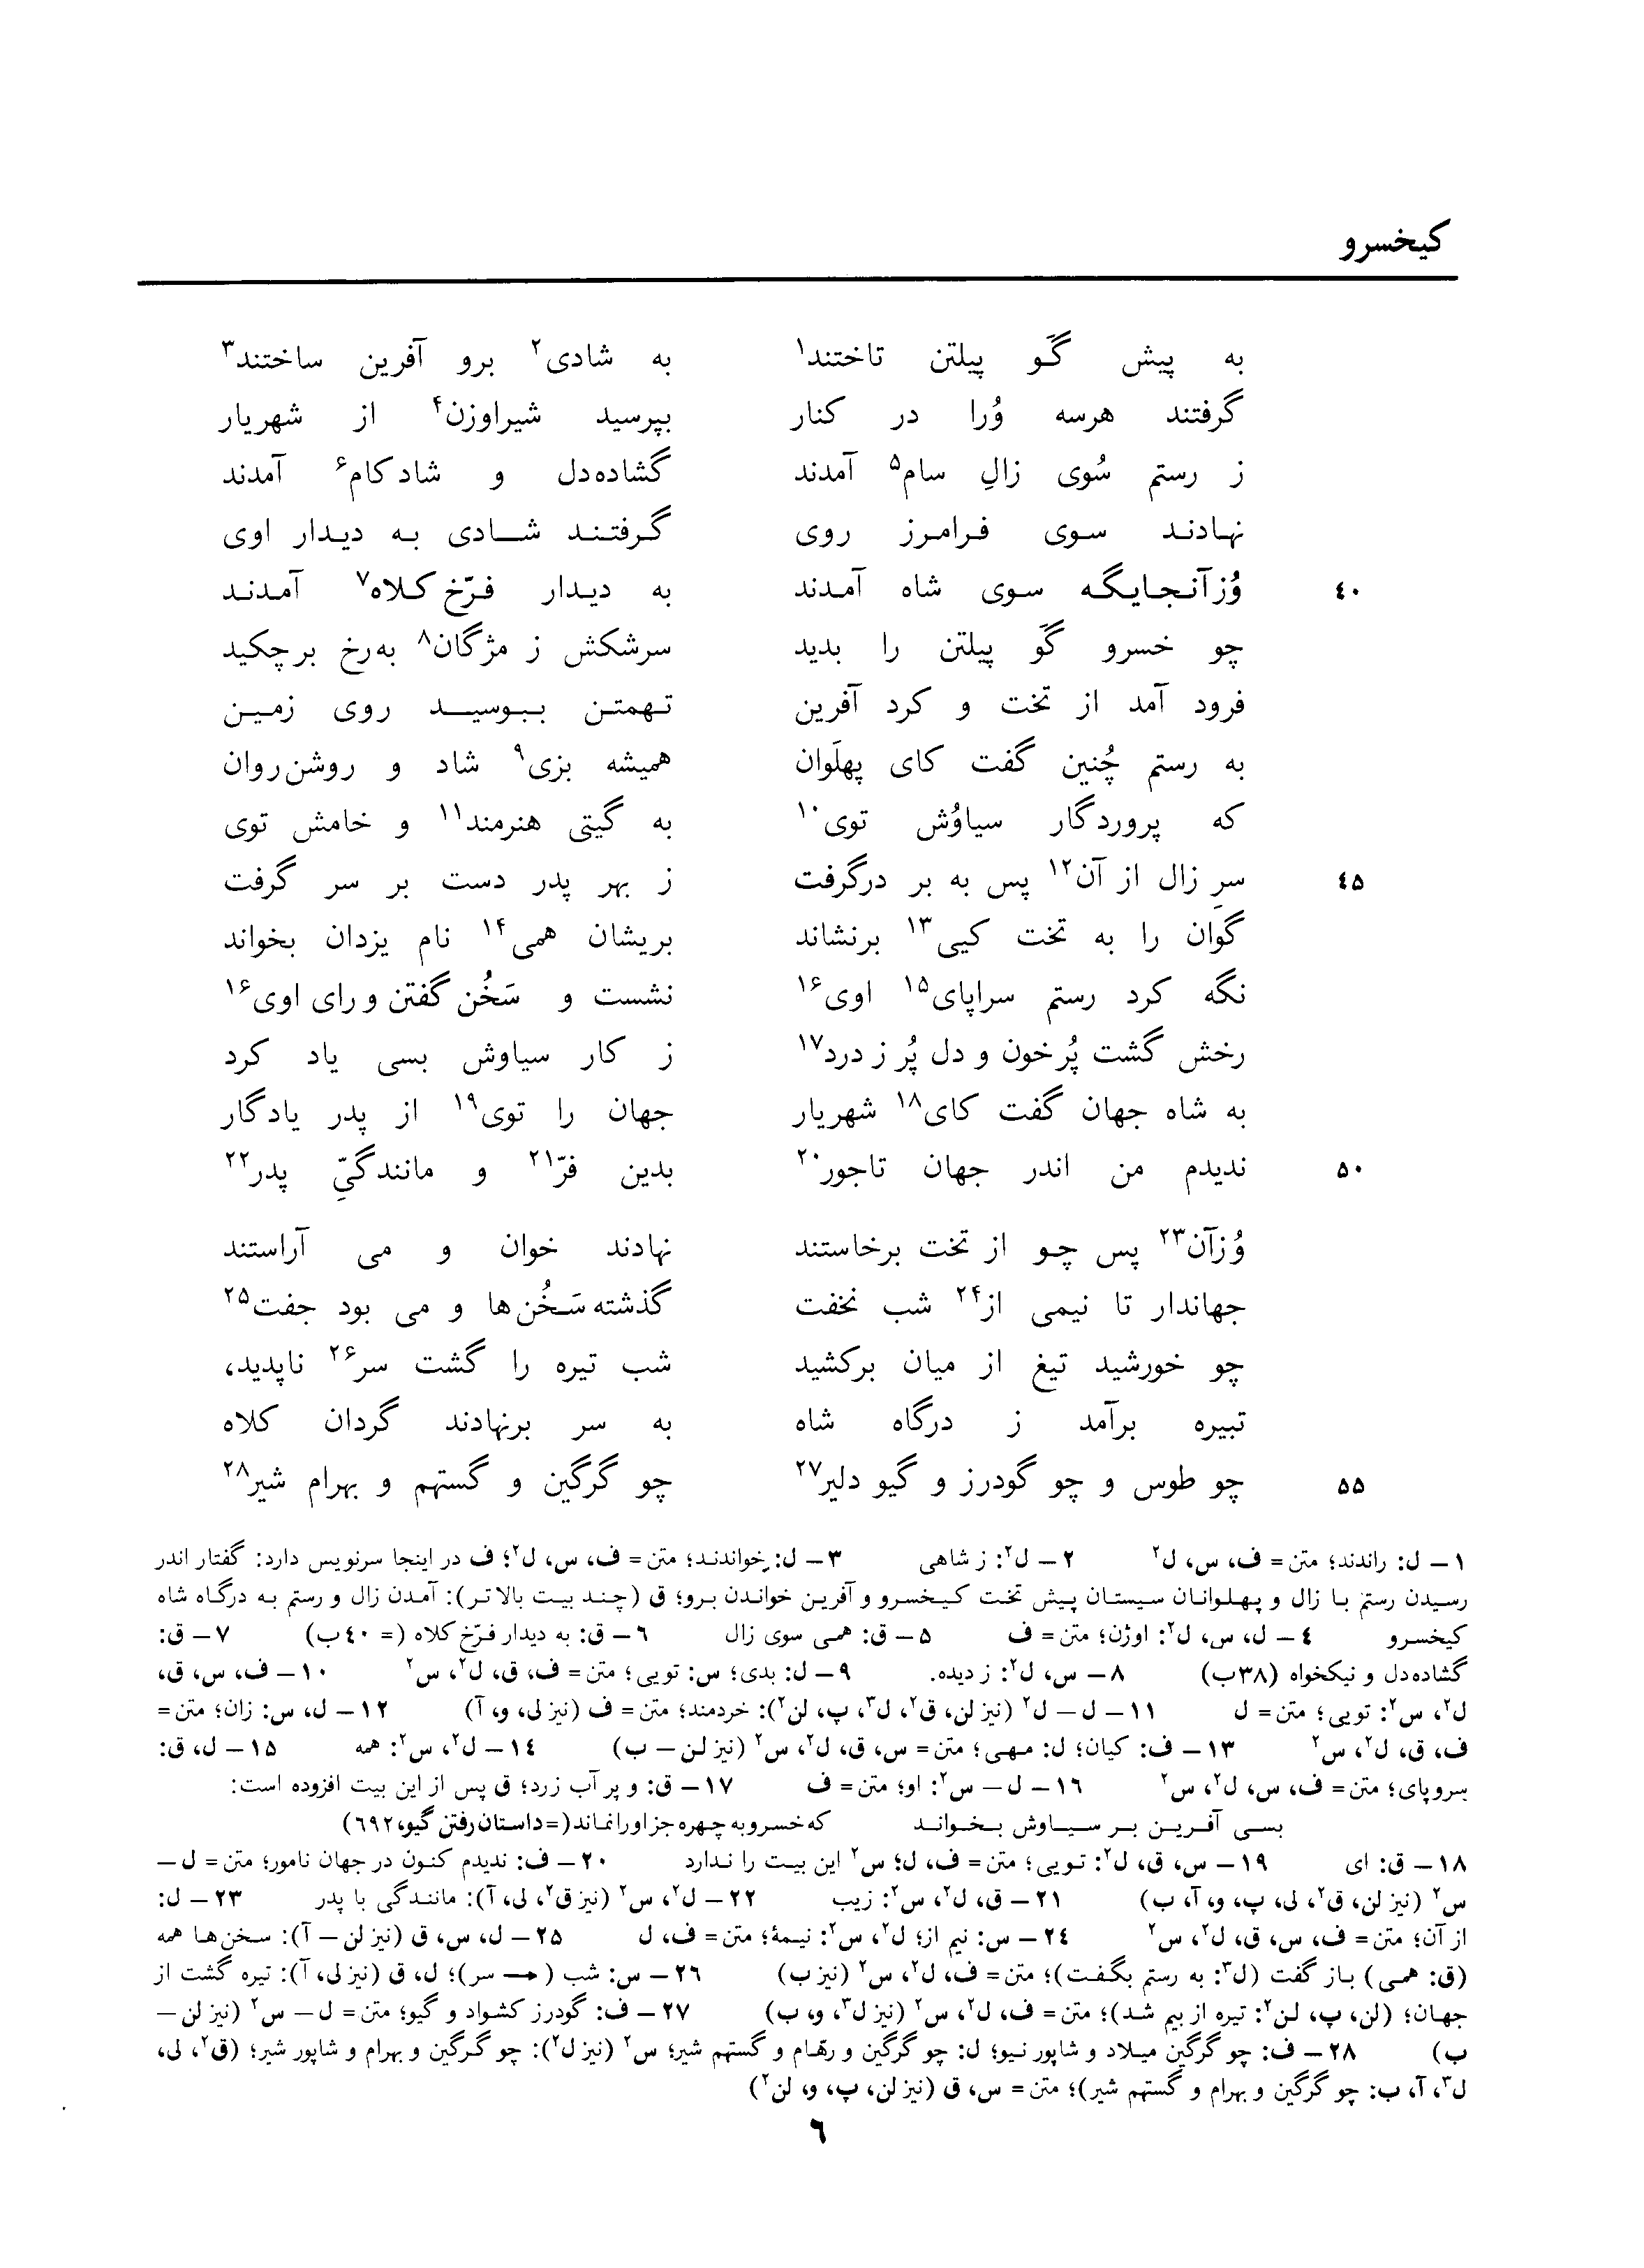 vol. 3, p. 6